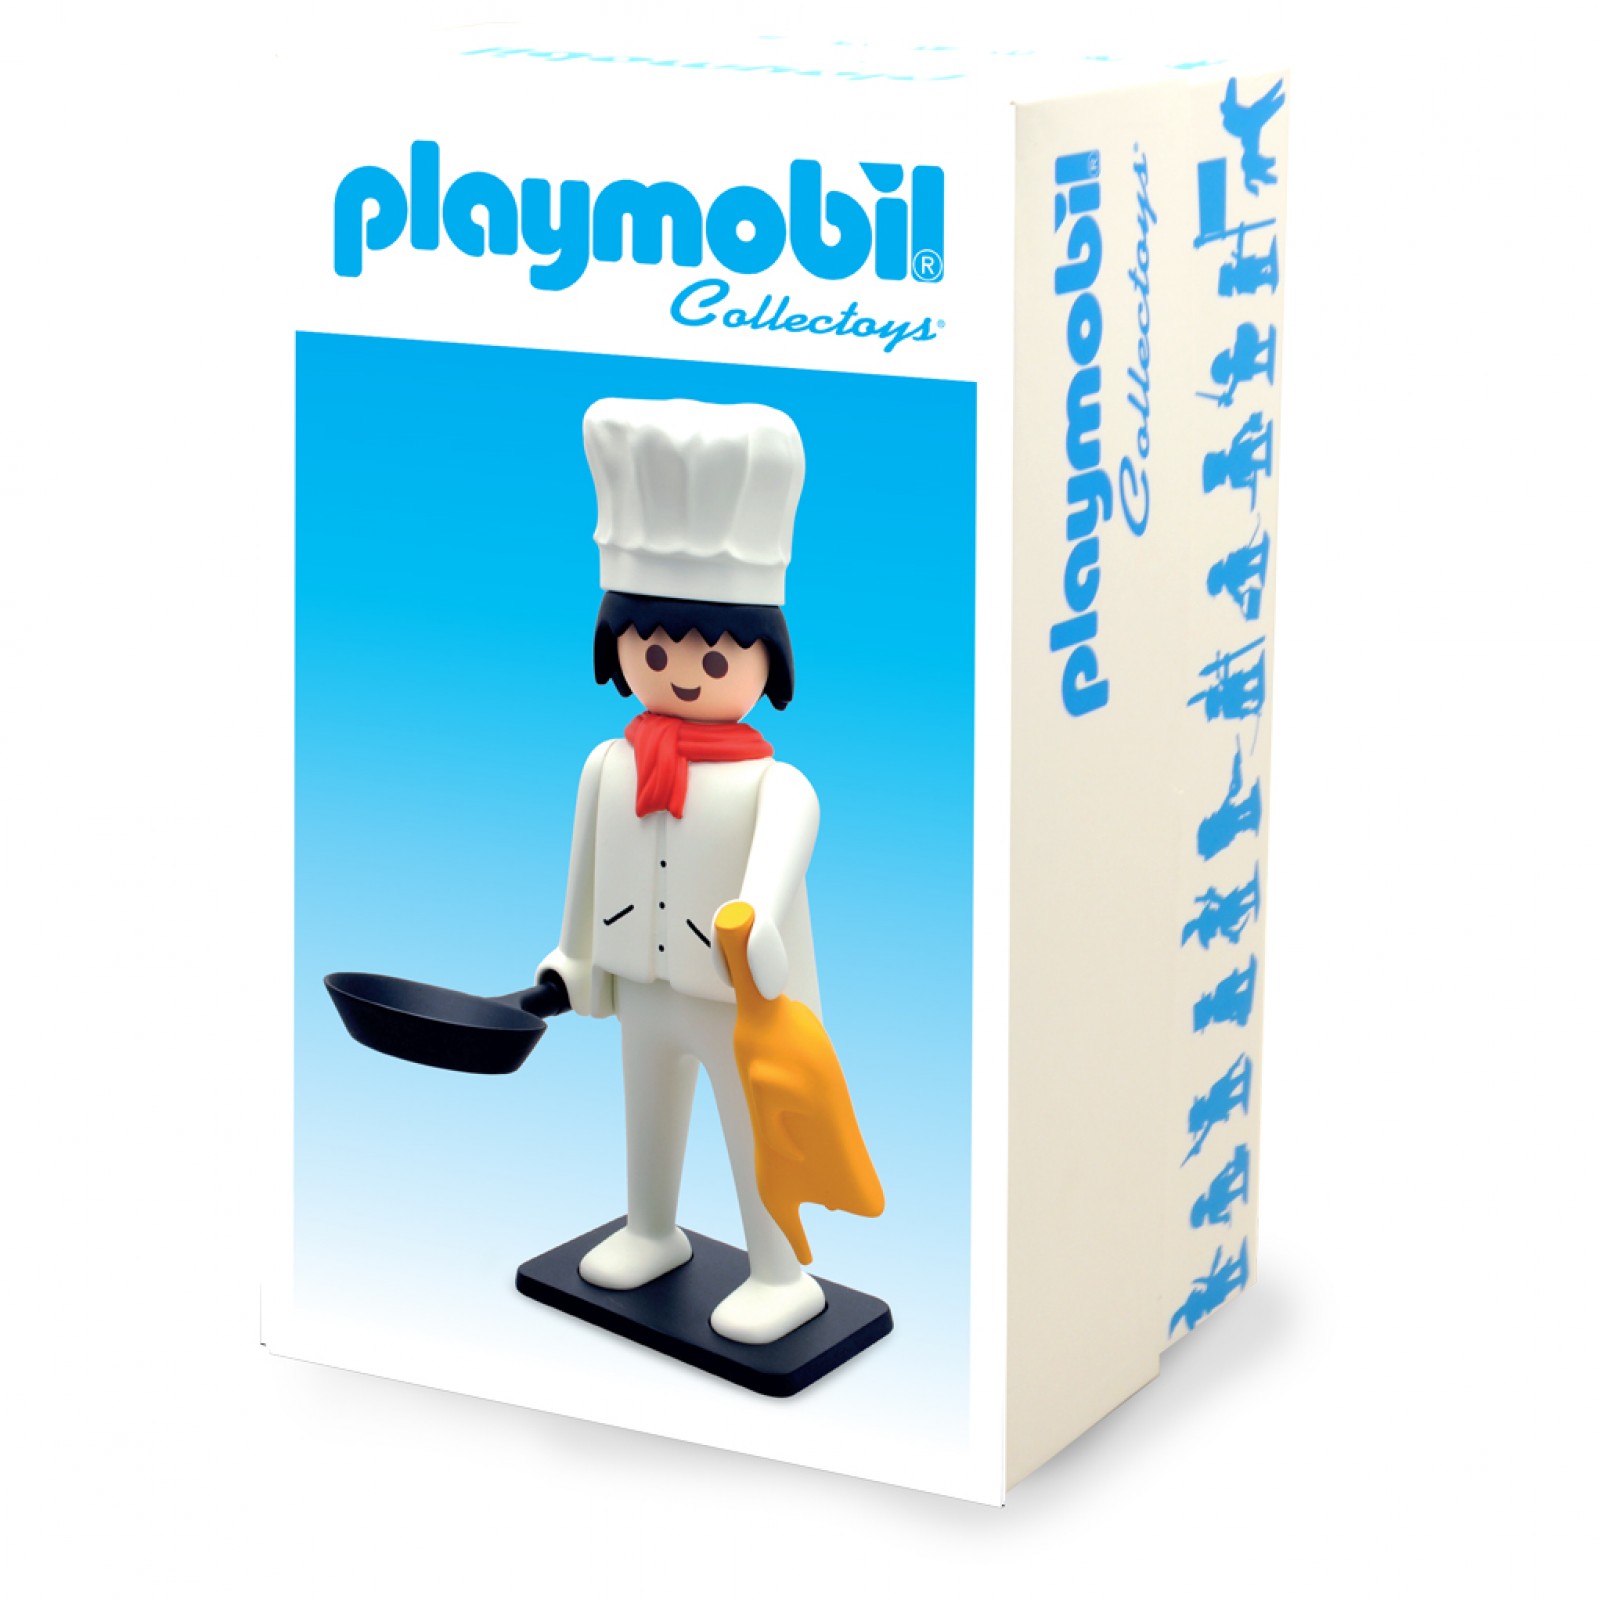 Playmobil géant de collection, Le Gentleman du Far West - Figurines